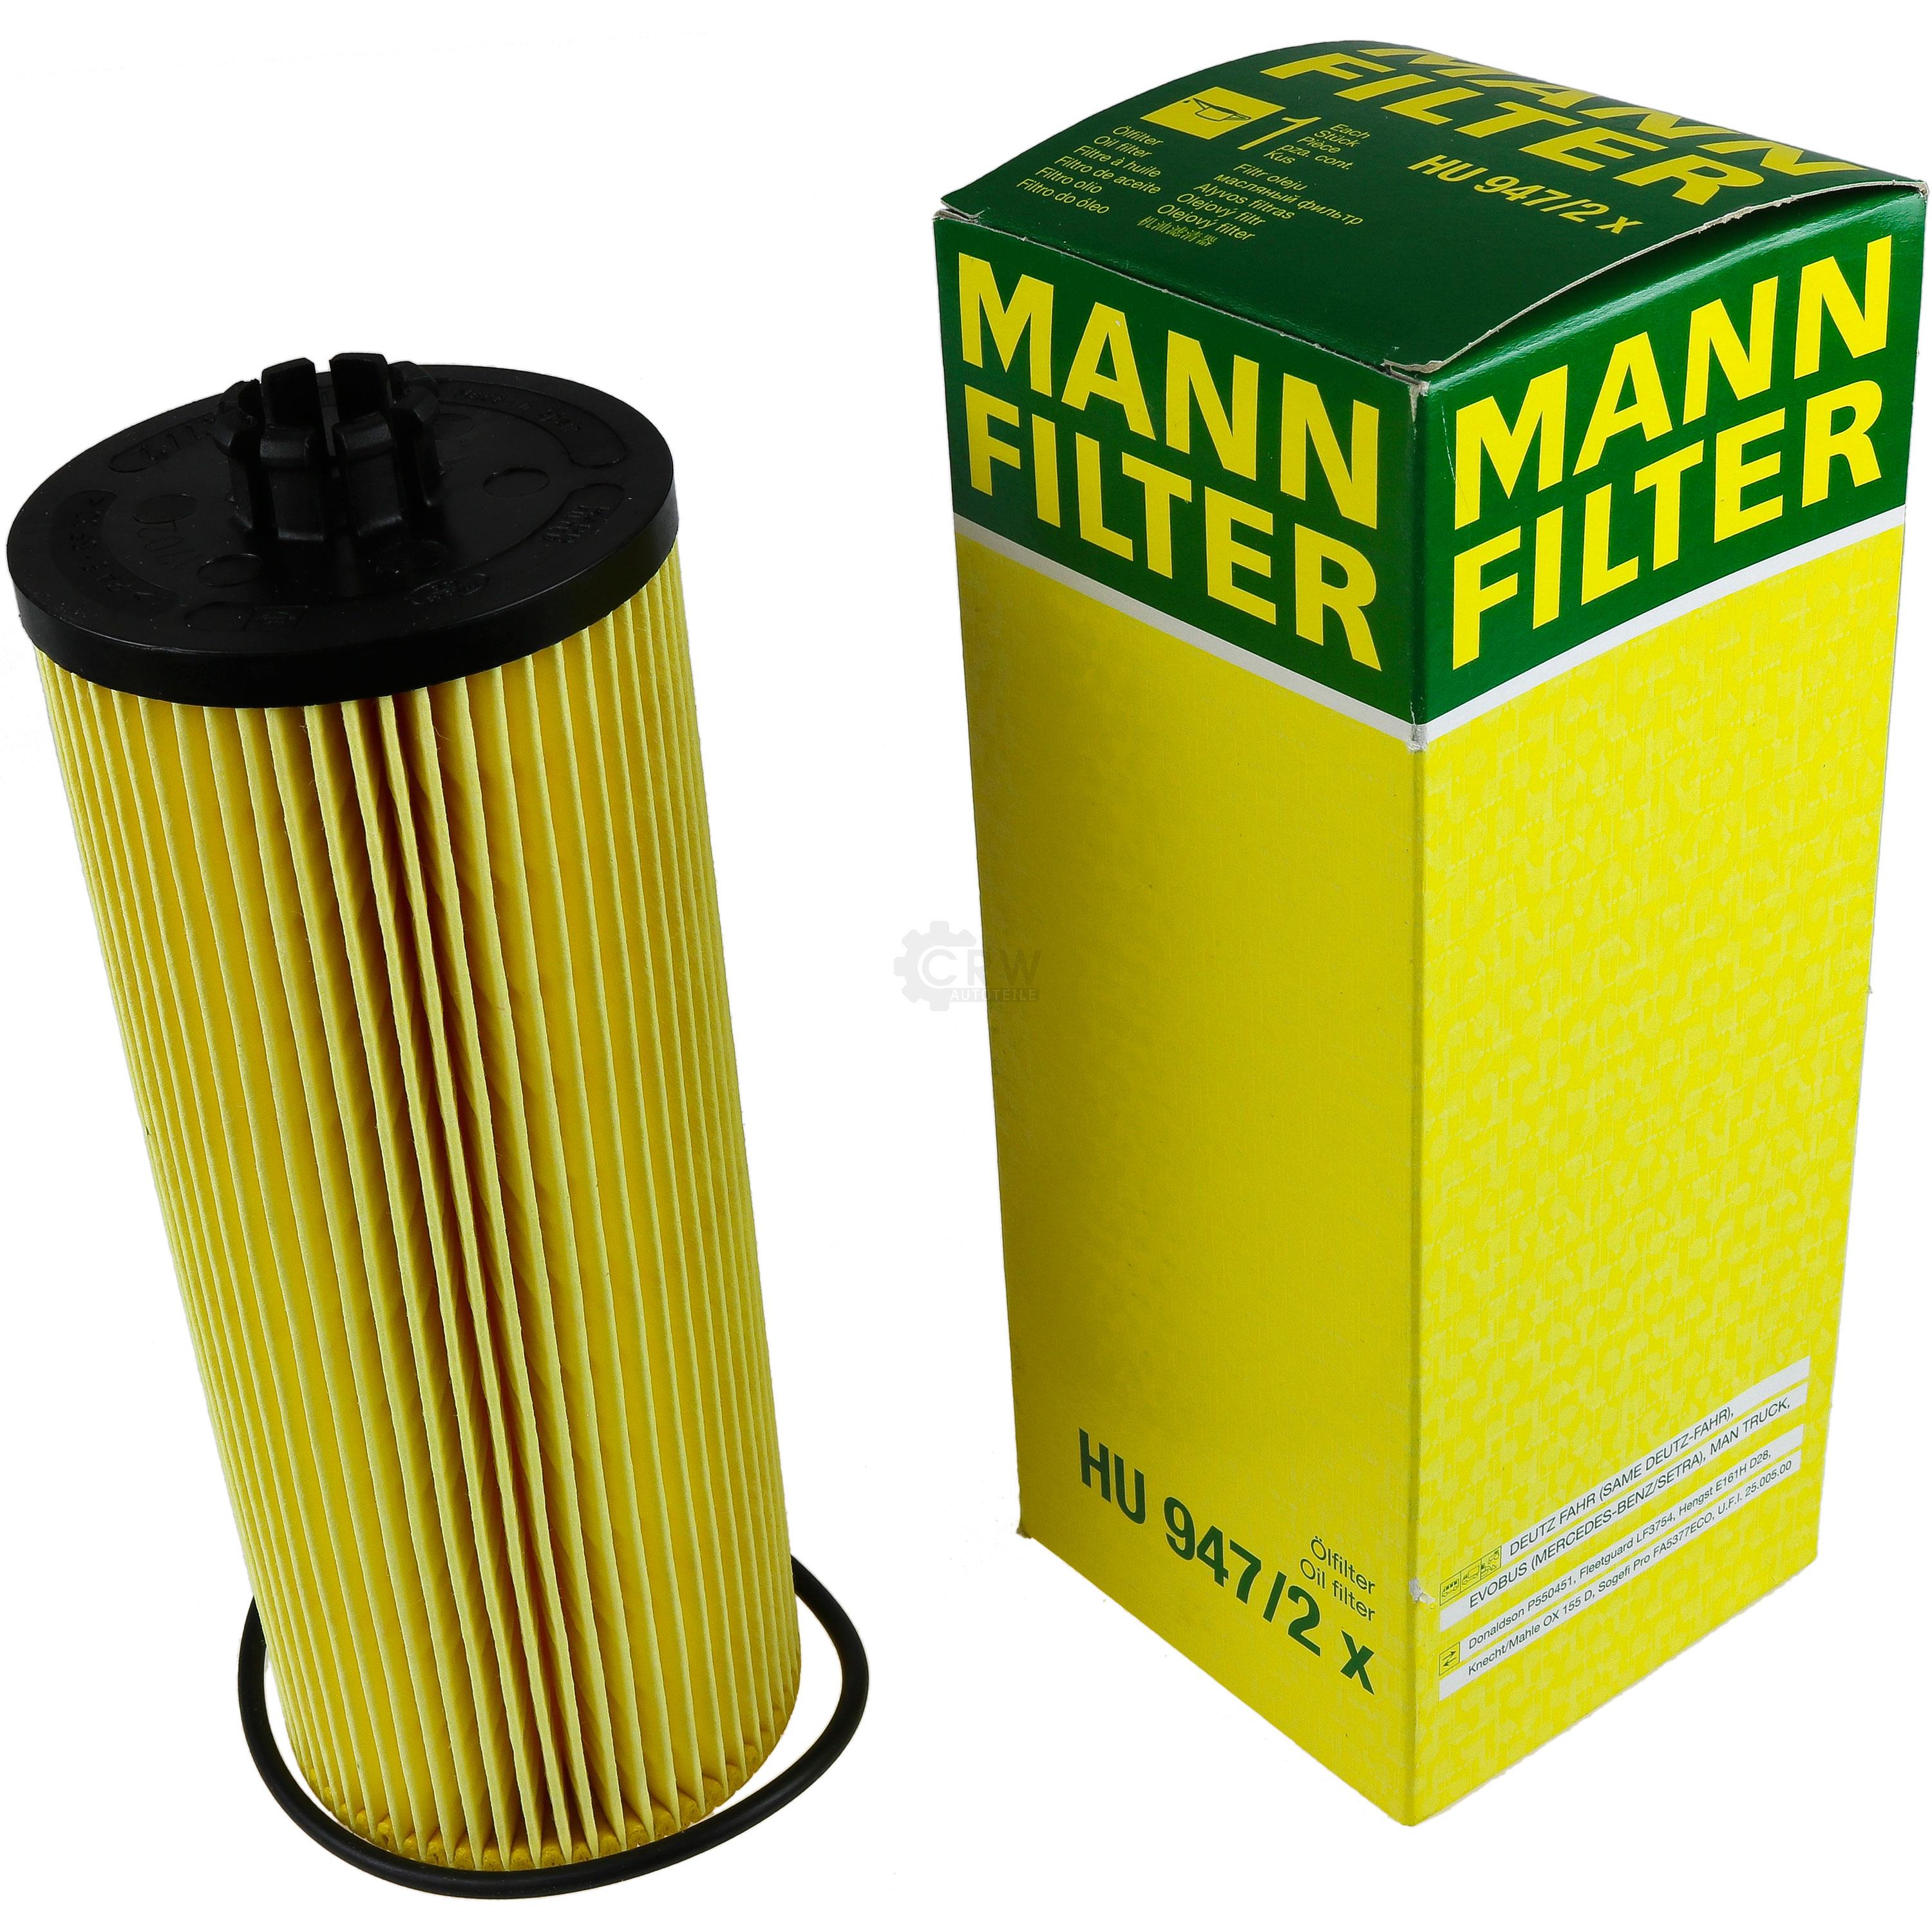 MANN-FILTER Ölfilter Oelfilter HU 947/2 x Oil Filter